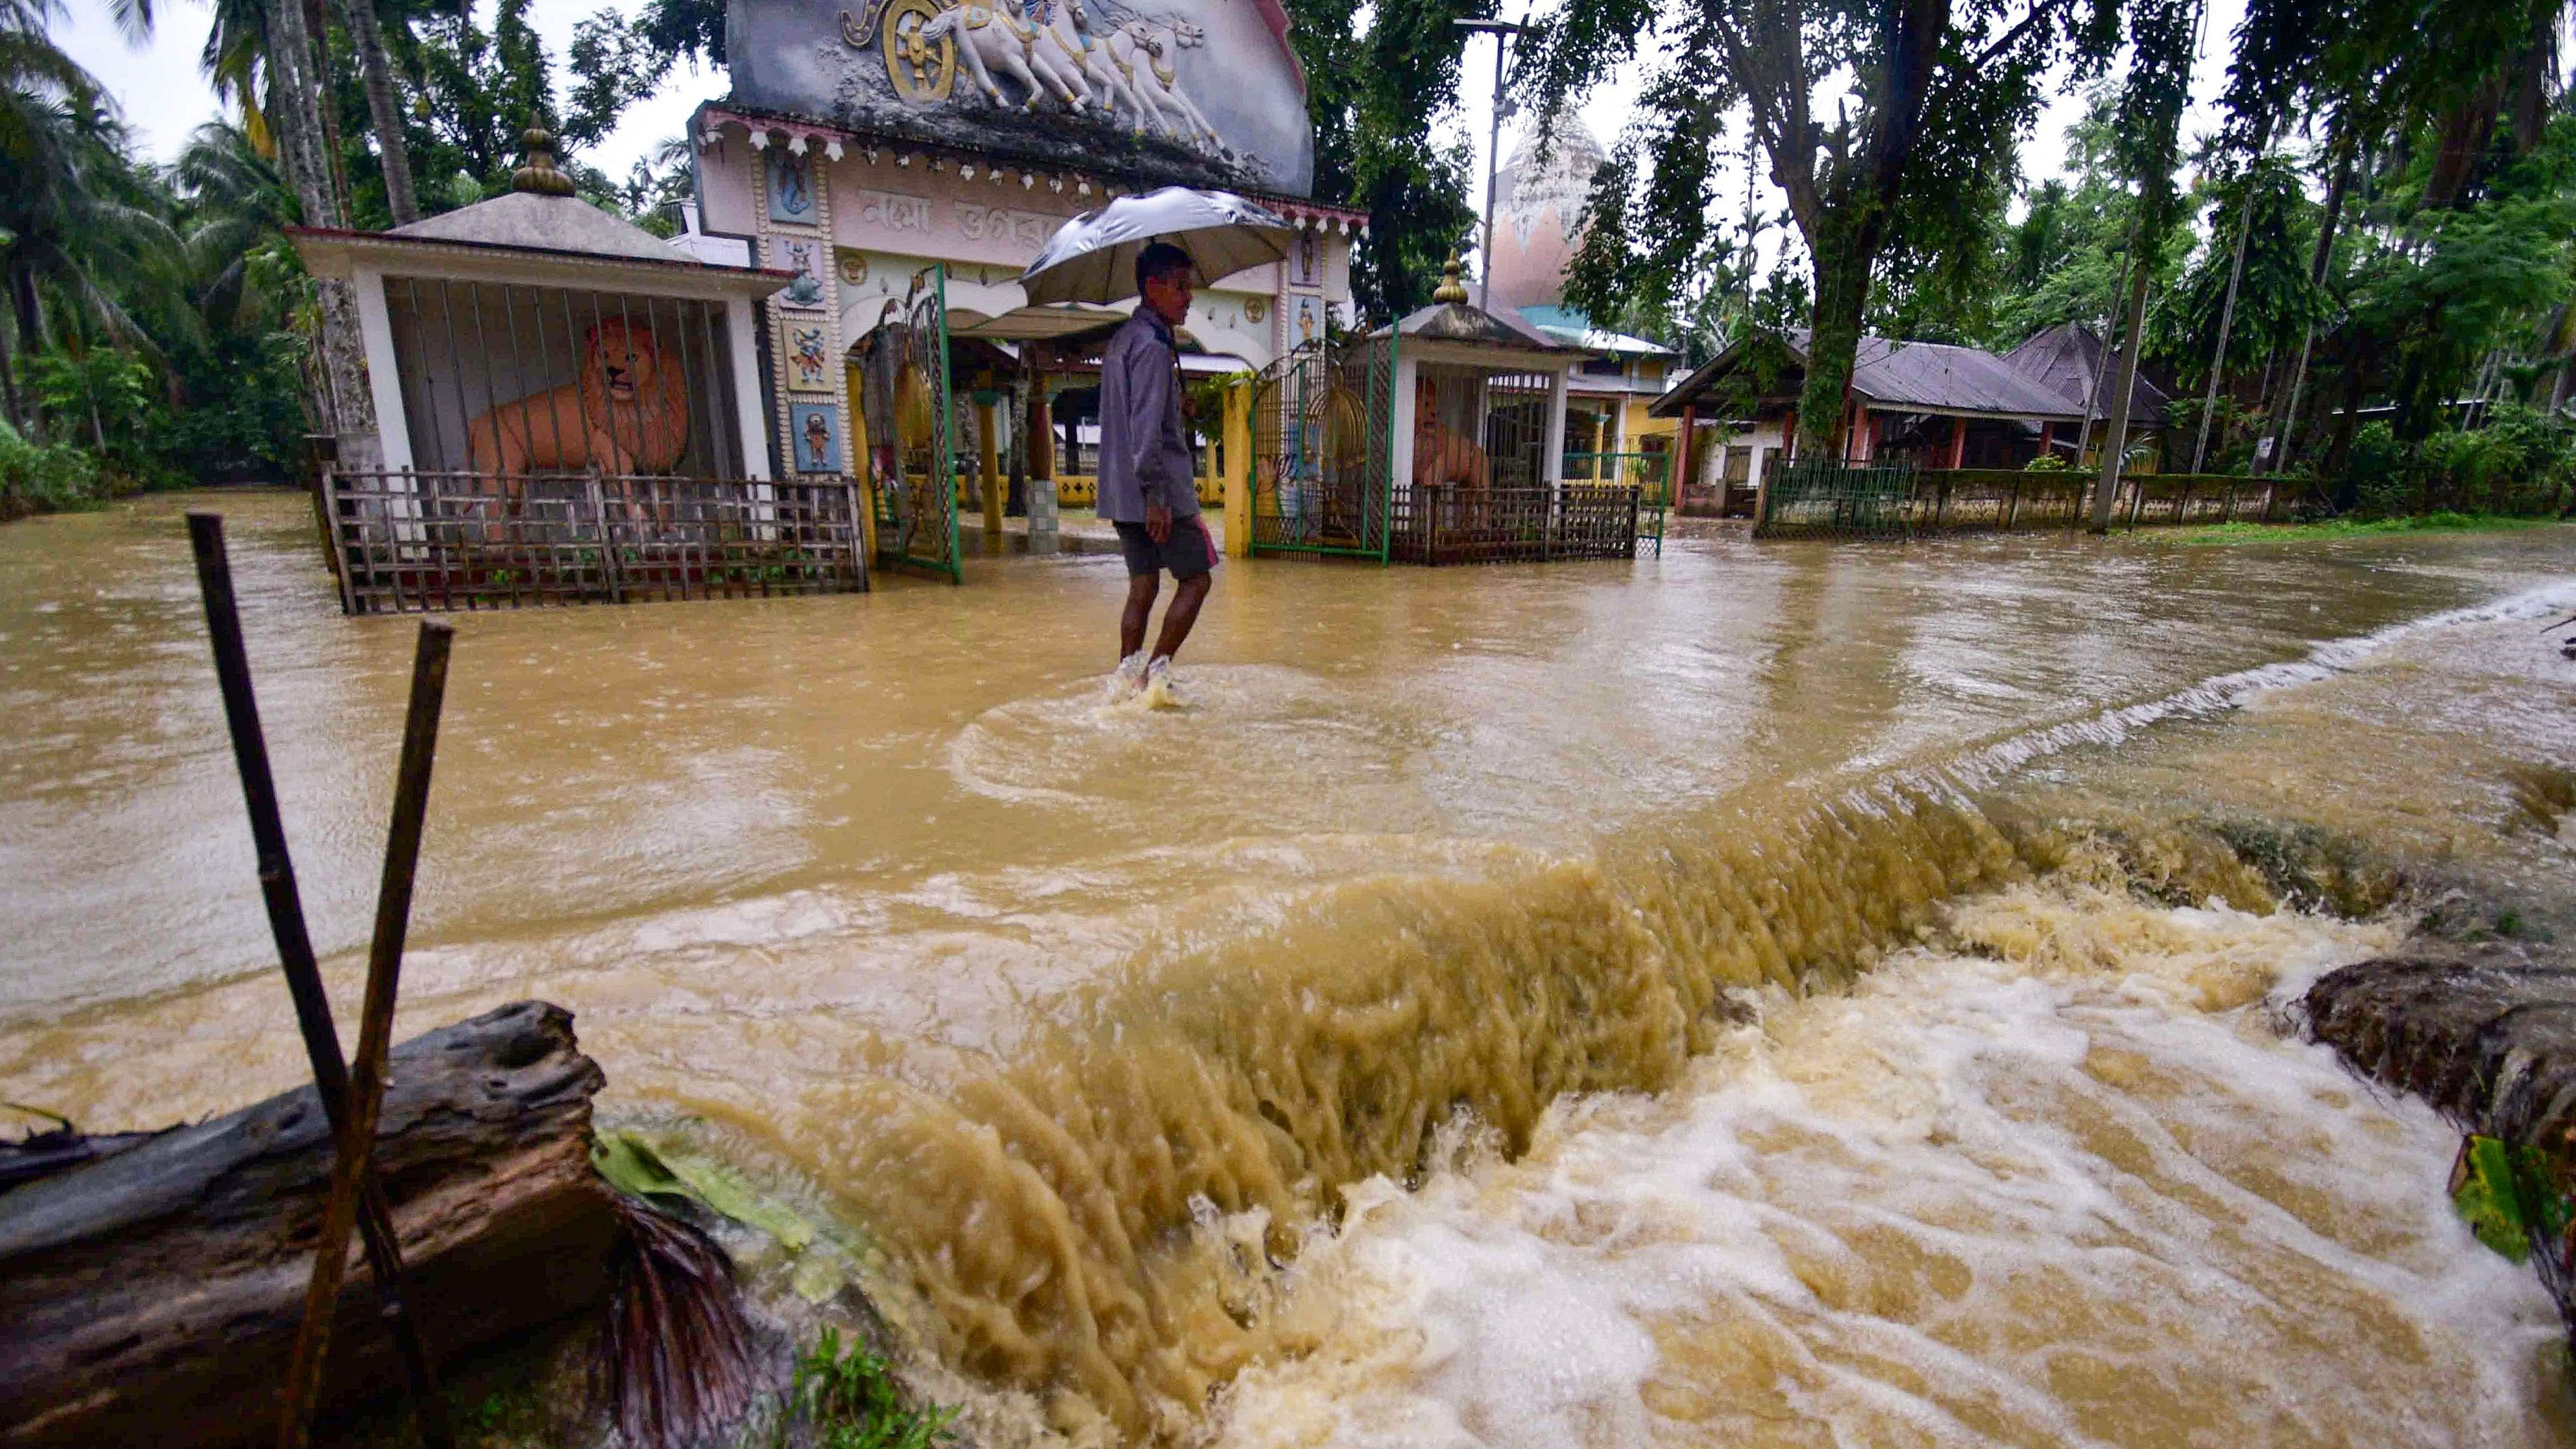 <div class="paragraphs"><p>A man walks through a flooded road following rains in Assam.</p></div>